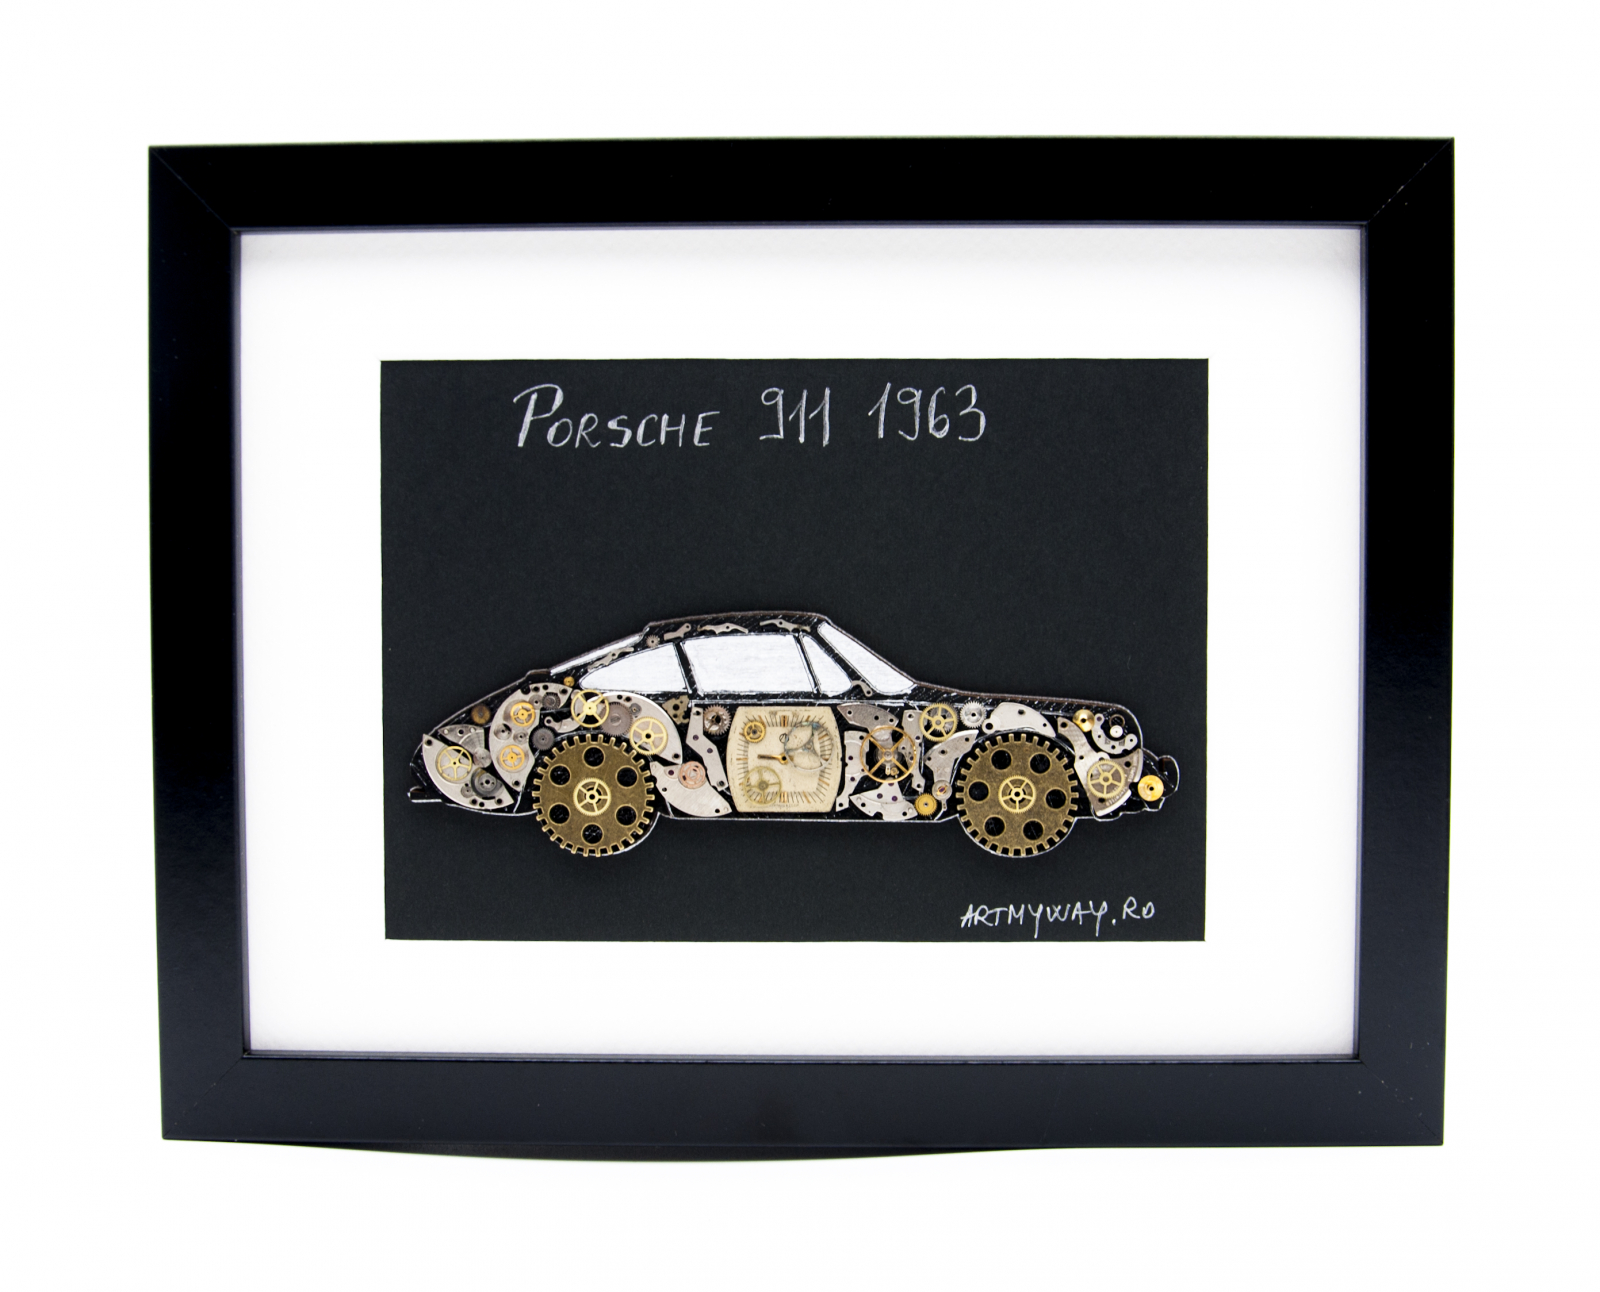 Tablou Porsche 911 1963 - Colectia ART my Cars | ArtMyWay